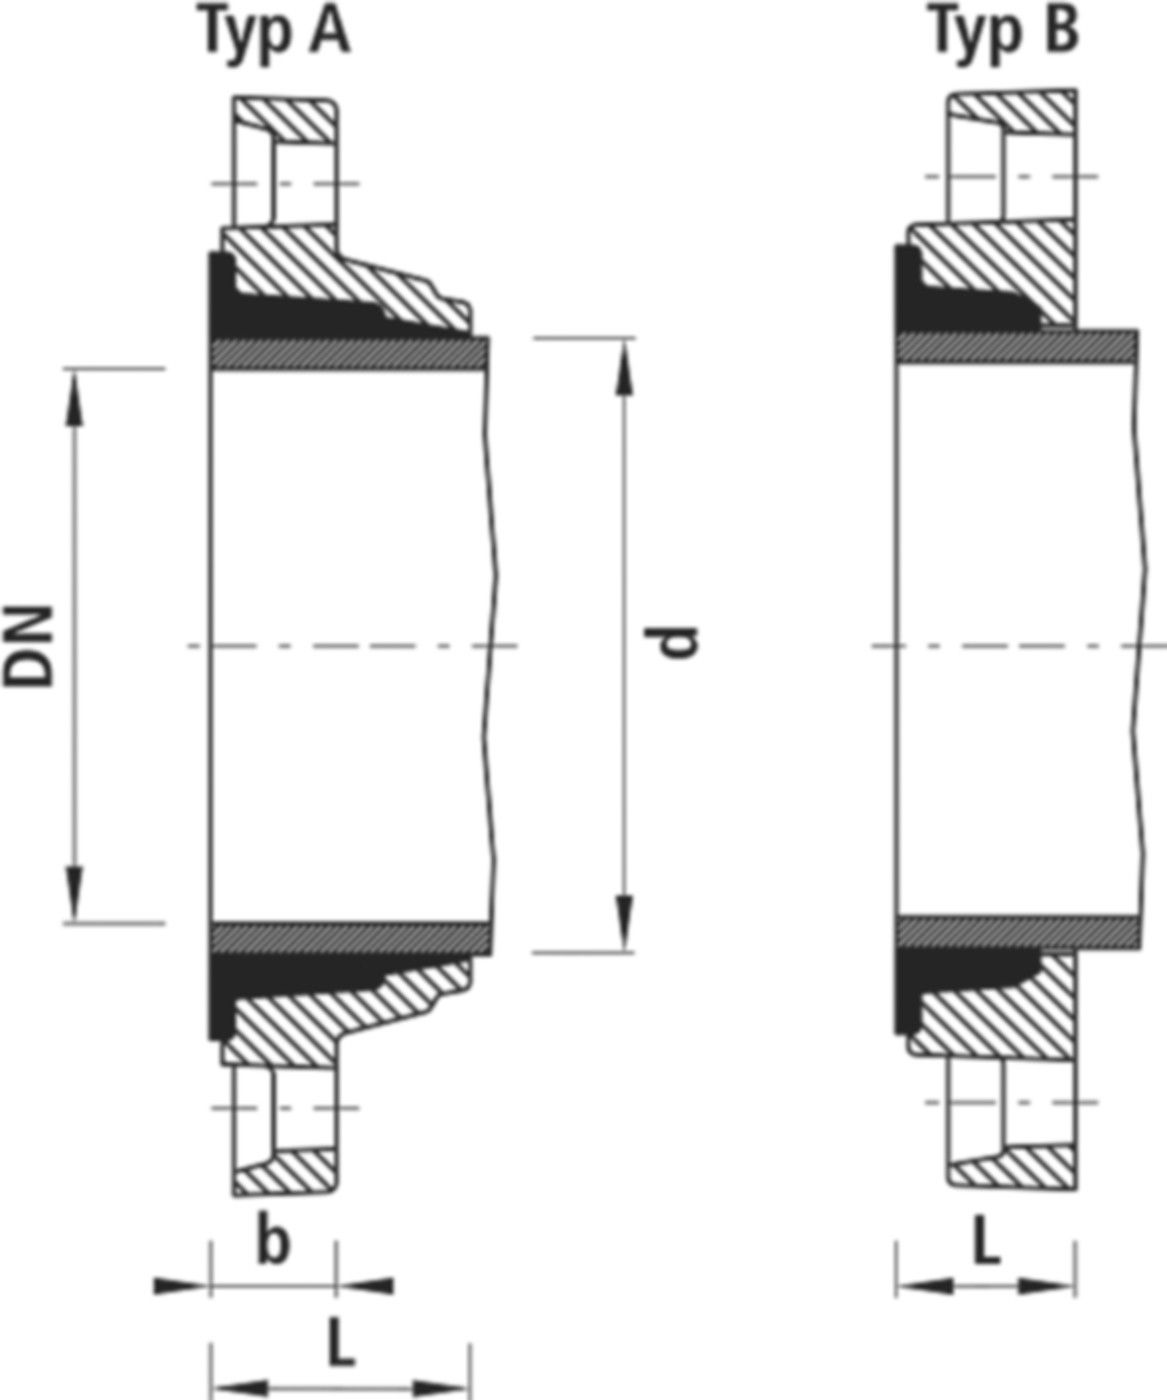 Zweikammer-Flansch für Stahlrohre 7130 PN 16 DN 200 / AD 211mm - Hawle Flanschformstücke